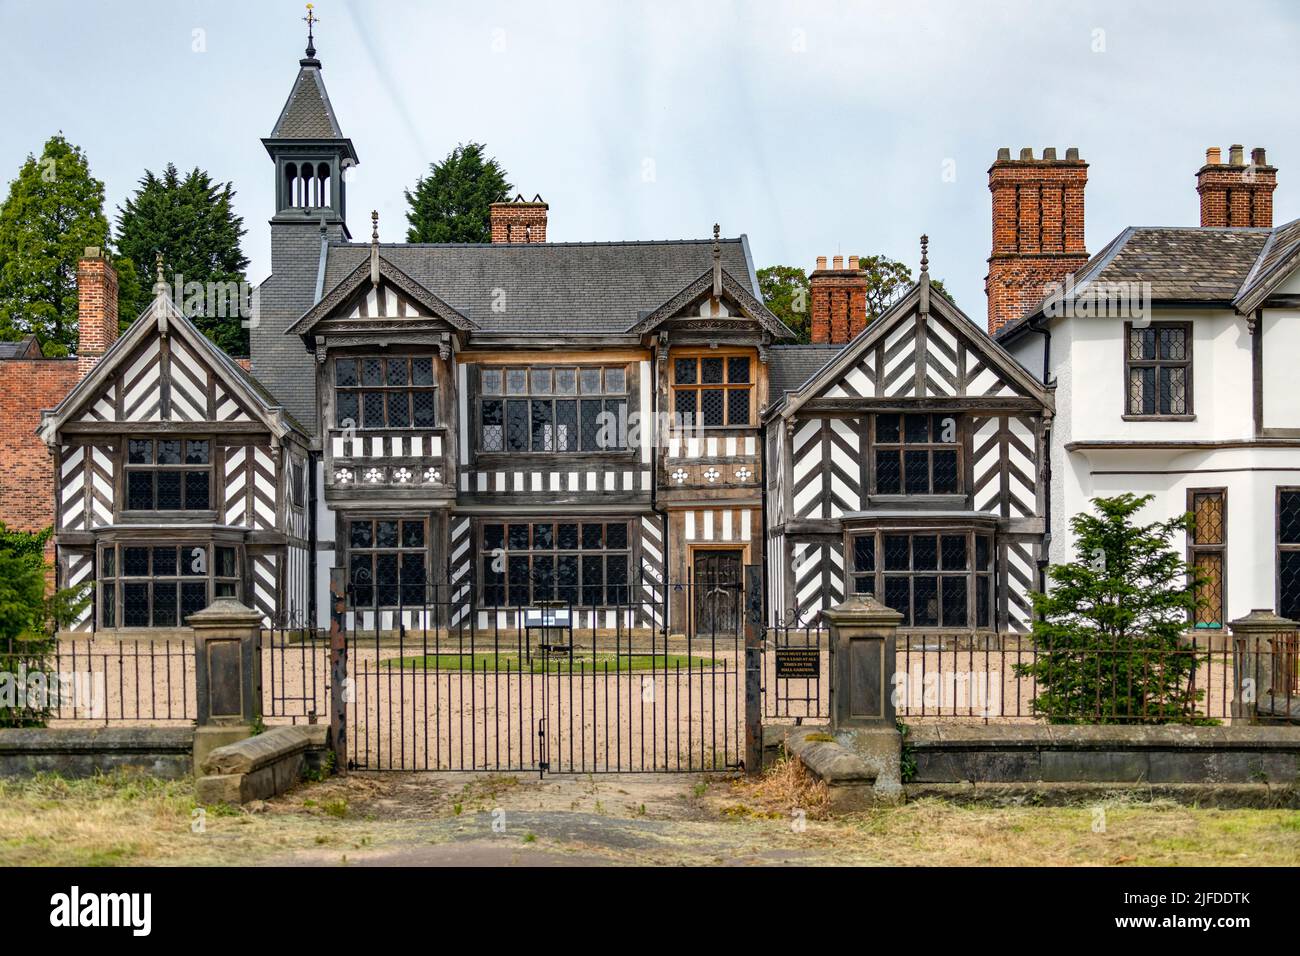 Wythenshawe Hall - Una casa histórica con entramado de madera del siglo 16th y antigua casa señorial en Wythenshawe, Manchester en el Reino Unido., Foto de stock